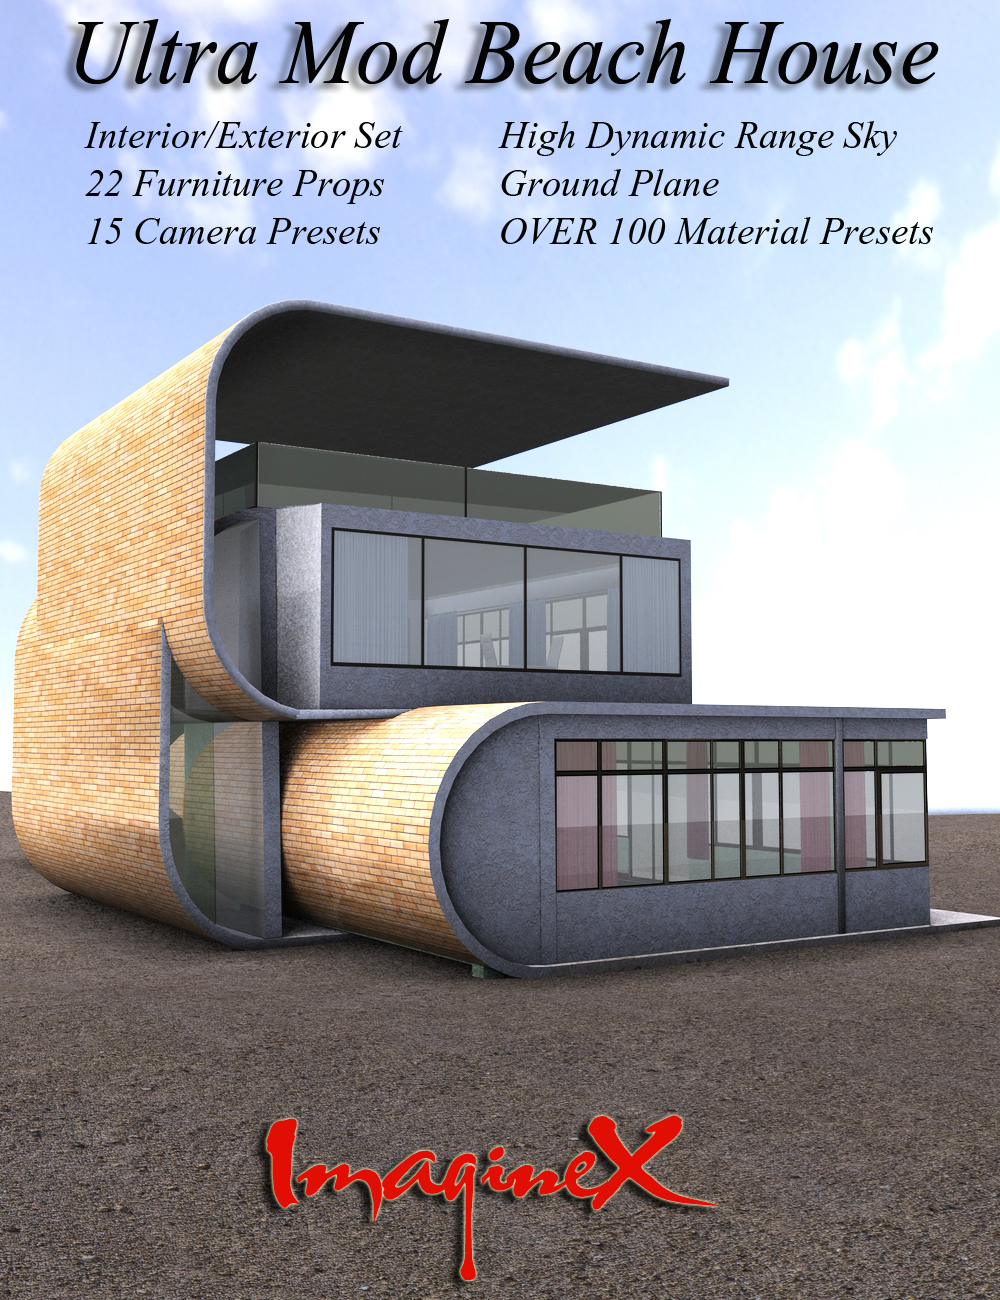 Ultra Mod Beach House by: ImagineX, 3D Models by Daz 3D